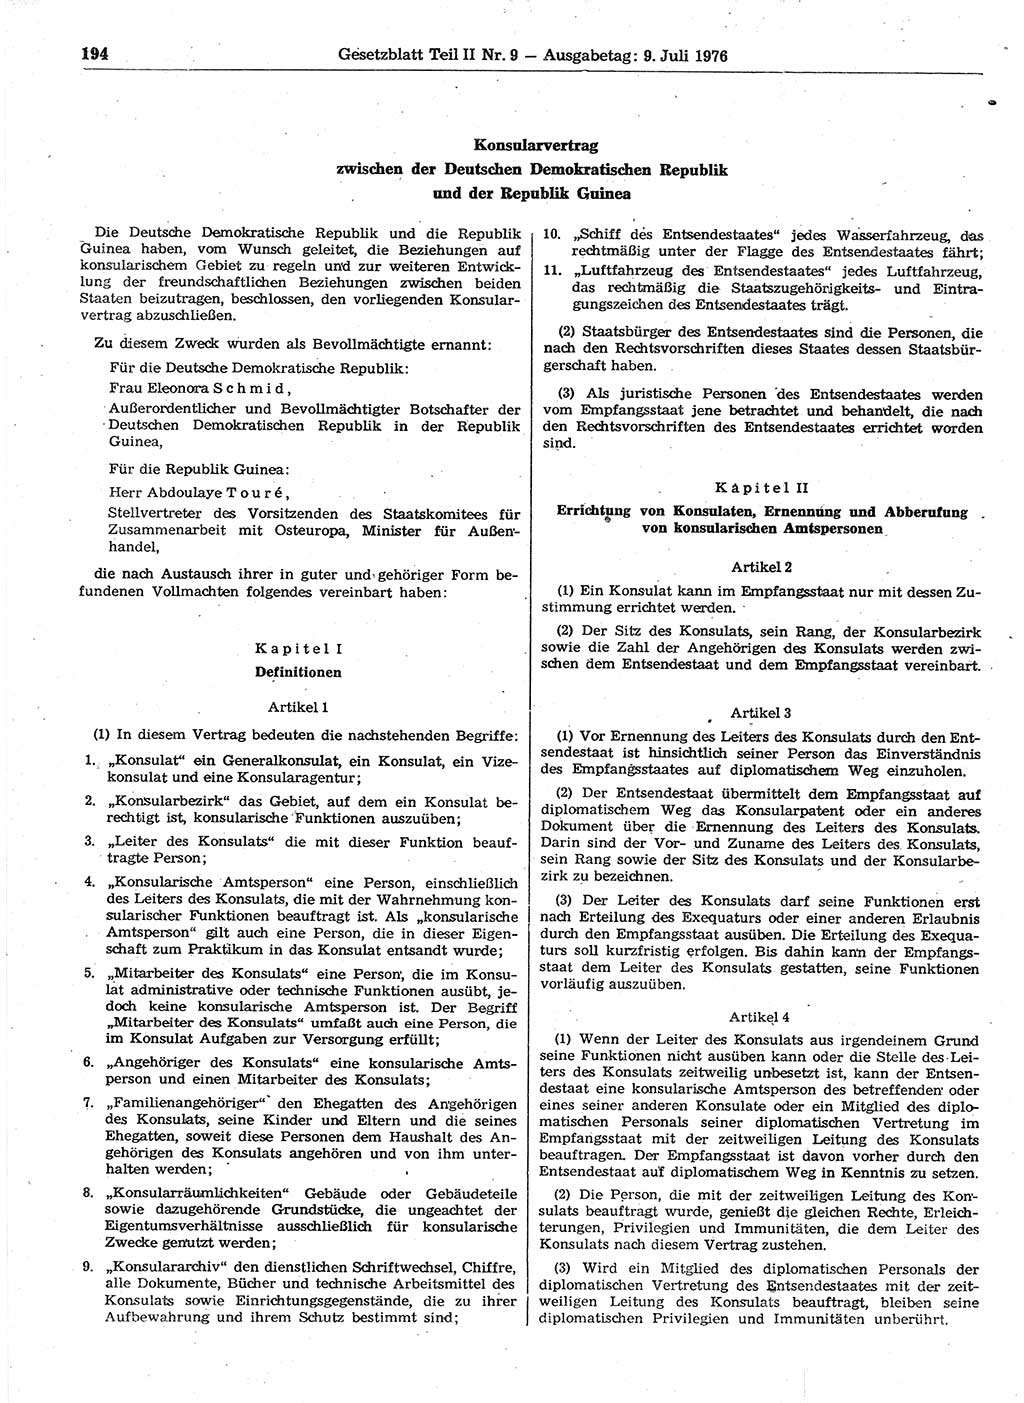 Gesetzblatt (GBl.) der Deutschen Demokratischen Republik (DDR) Teil ⅠⅠ 1976, Seite 194 (GBl. DDR ⅠⅠ 1976, S. 194)